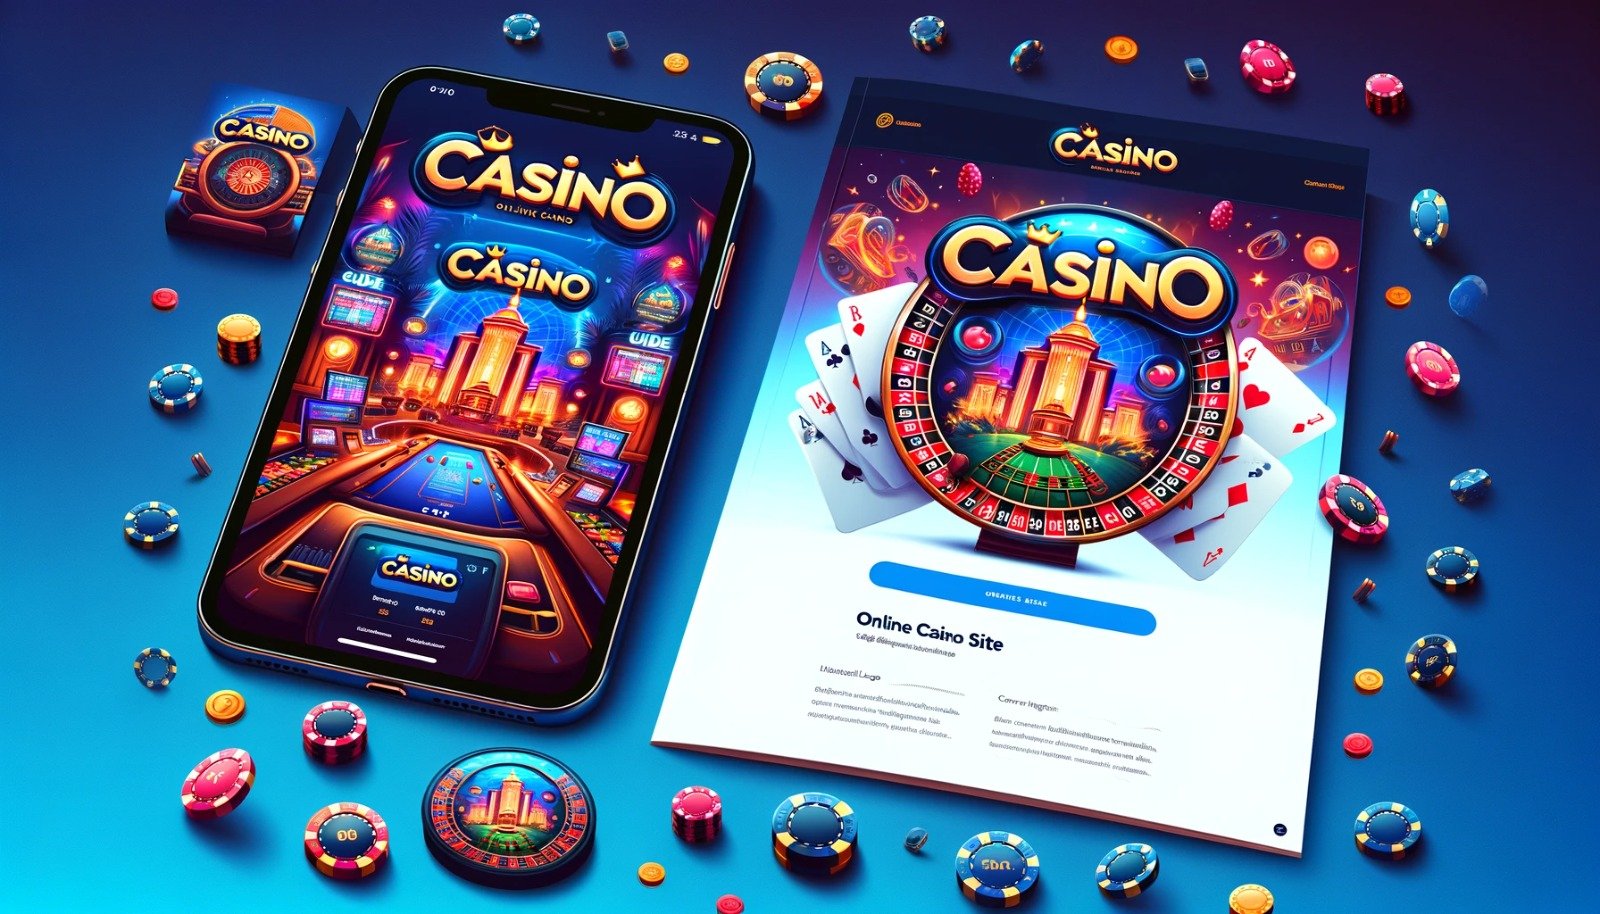 Casino Siteleri Cover Image